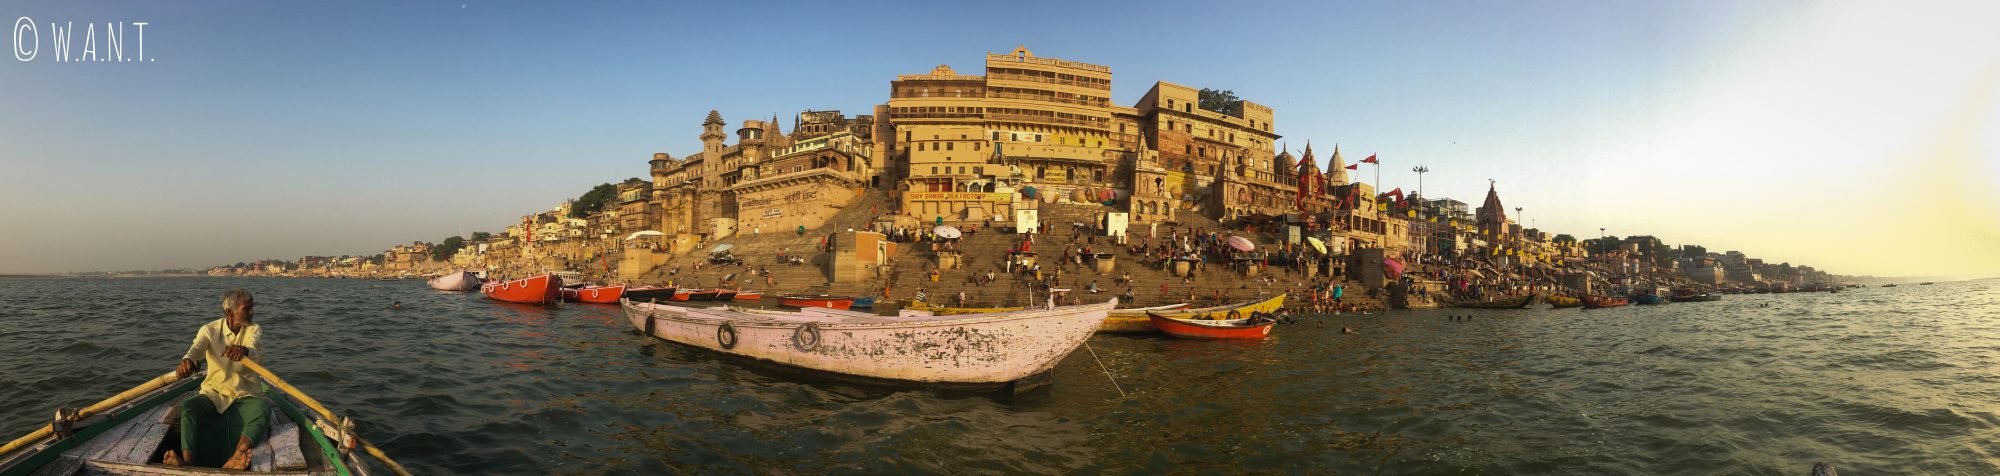 Vue panoramique des ghats de Varanasi lors de notre promenade matinale sur le Gange